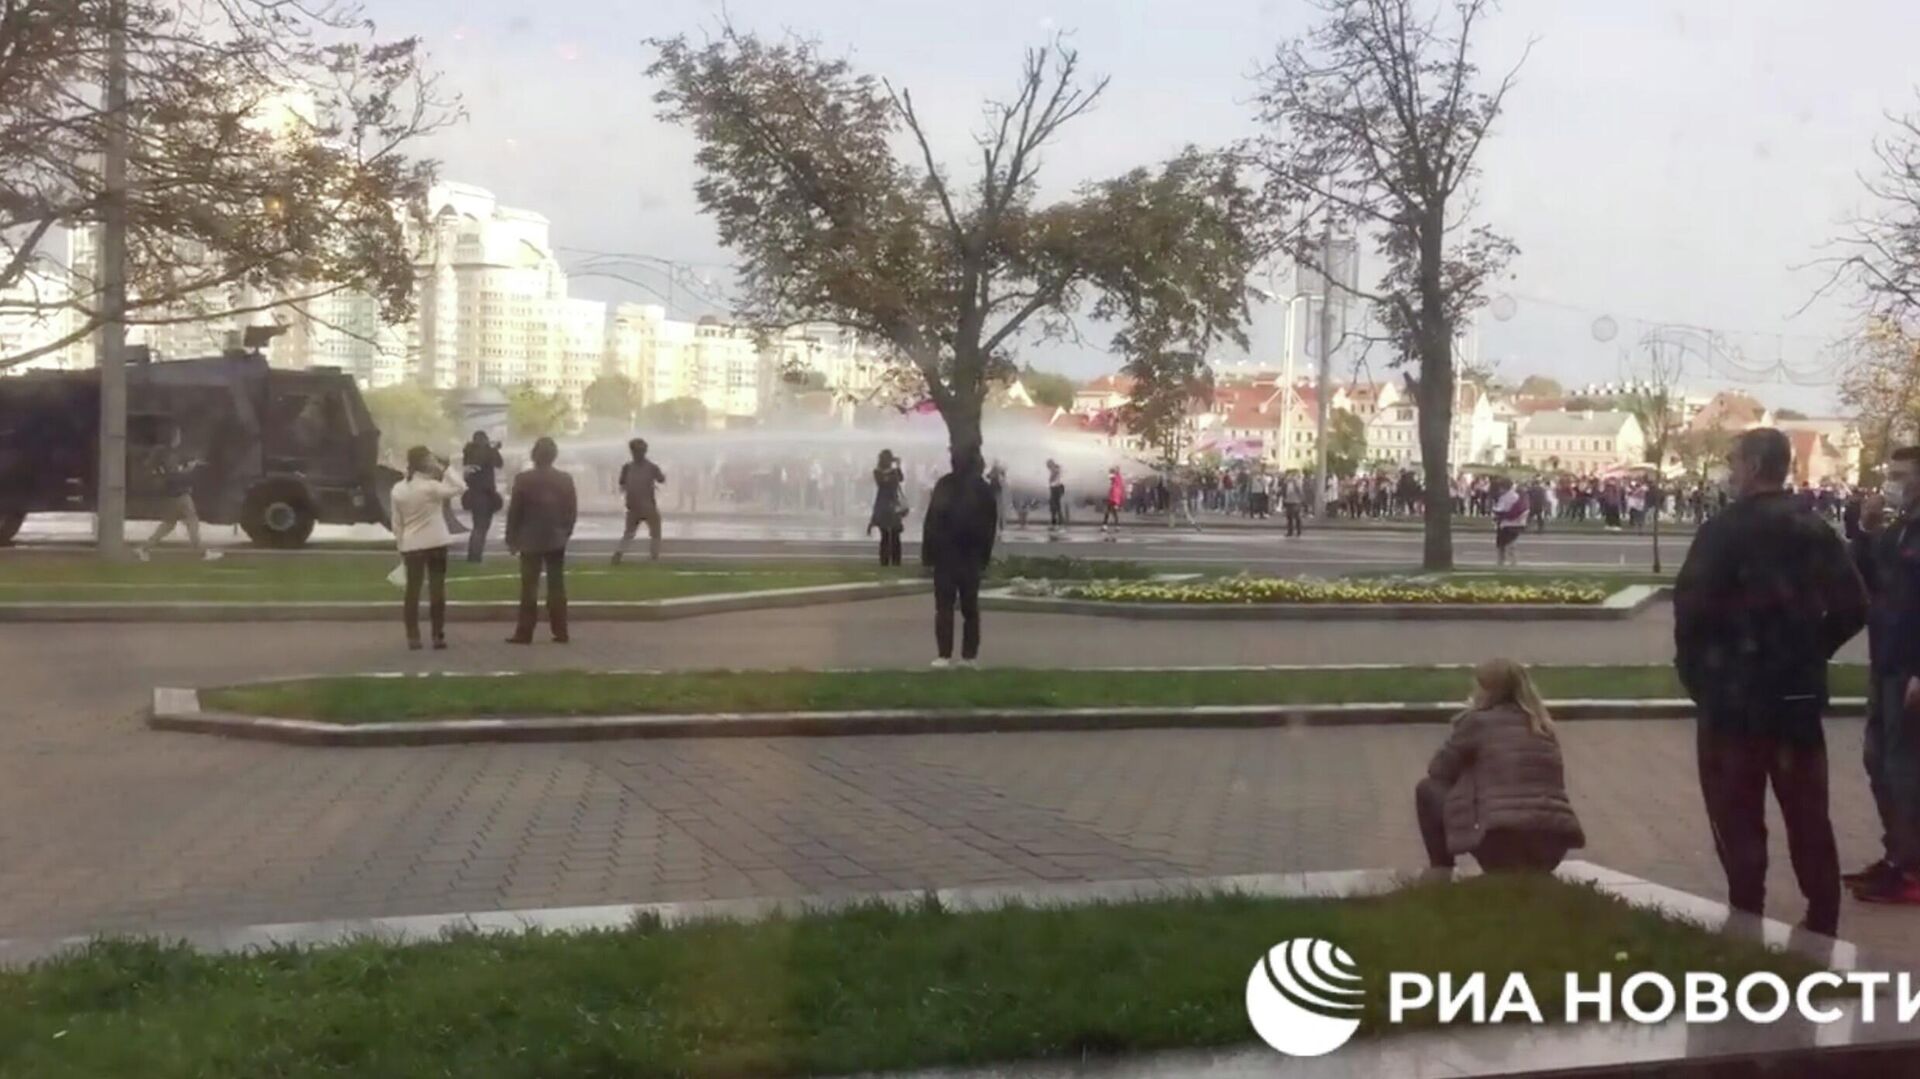 Милиция применила водометы против протестующих в Минске  - РИА Новости, 1920, 04.10.2020